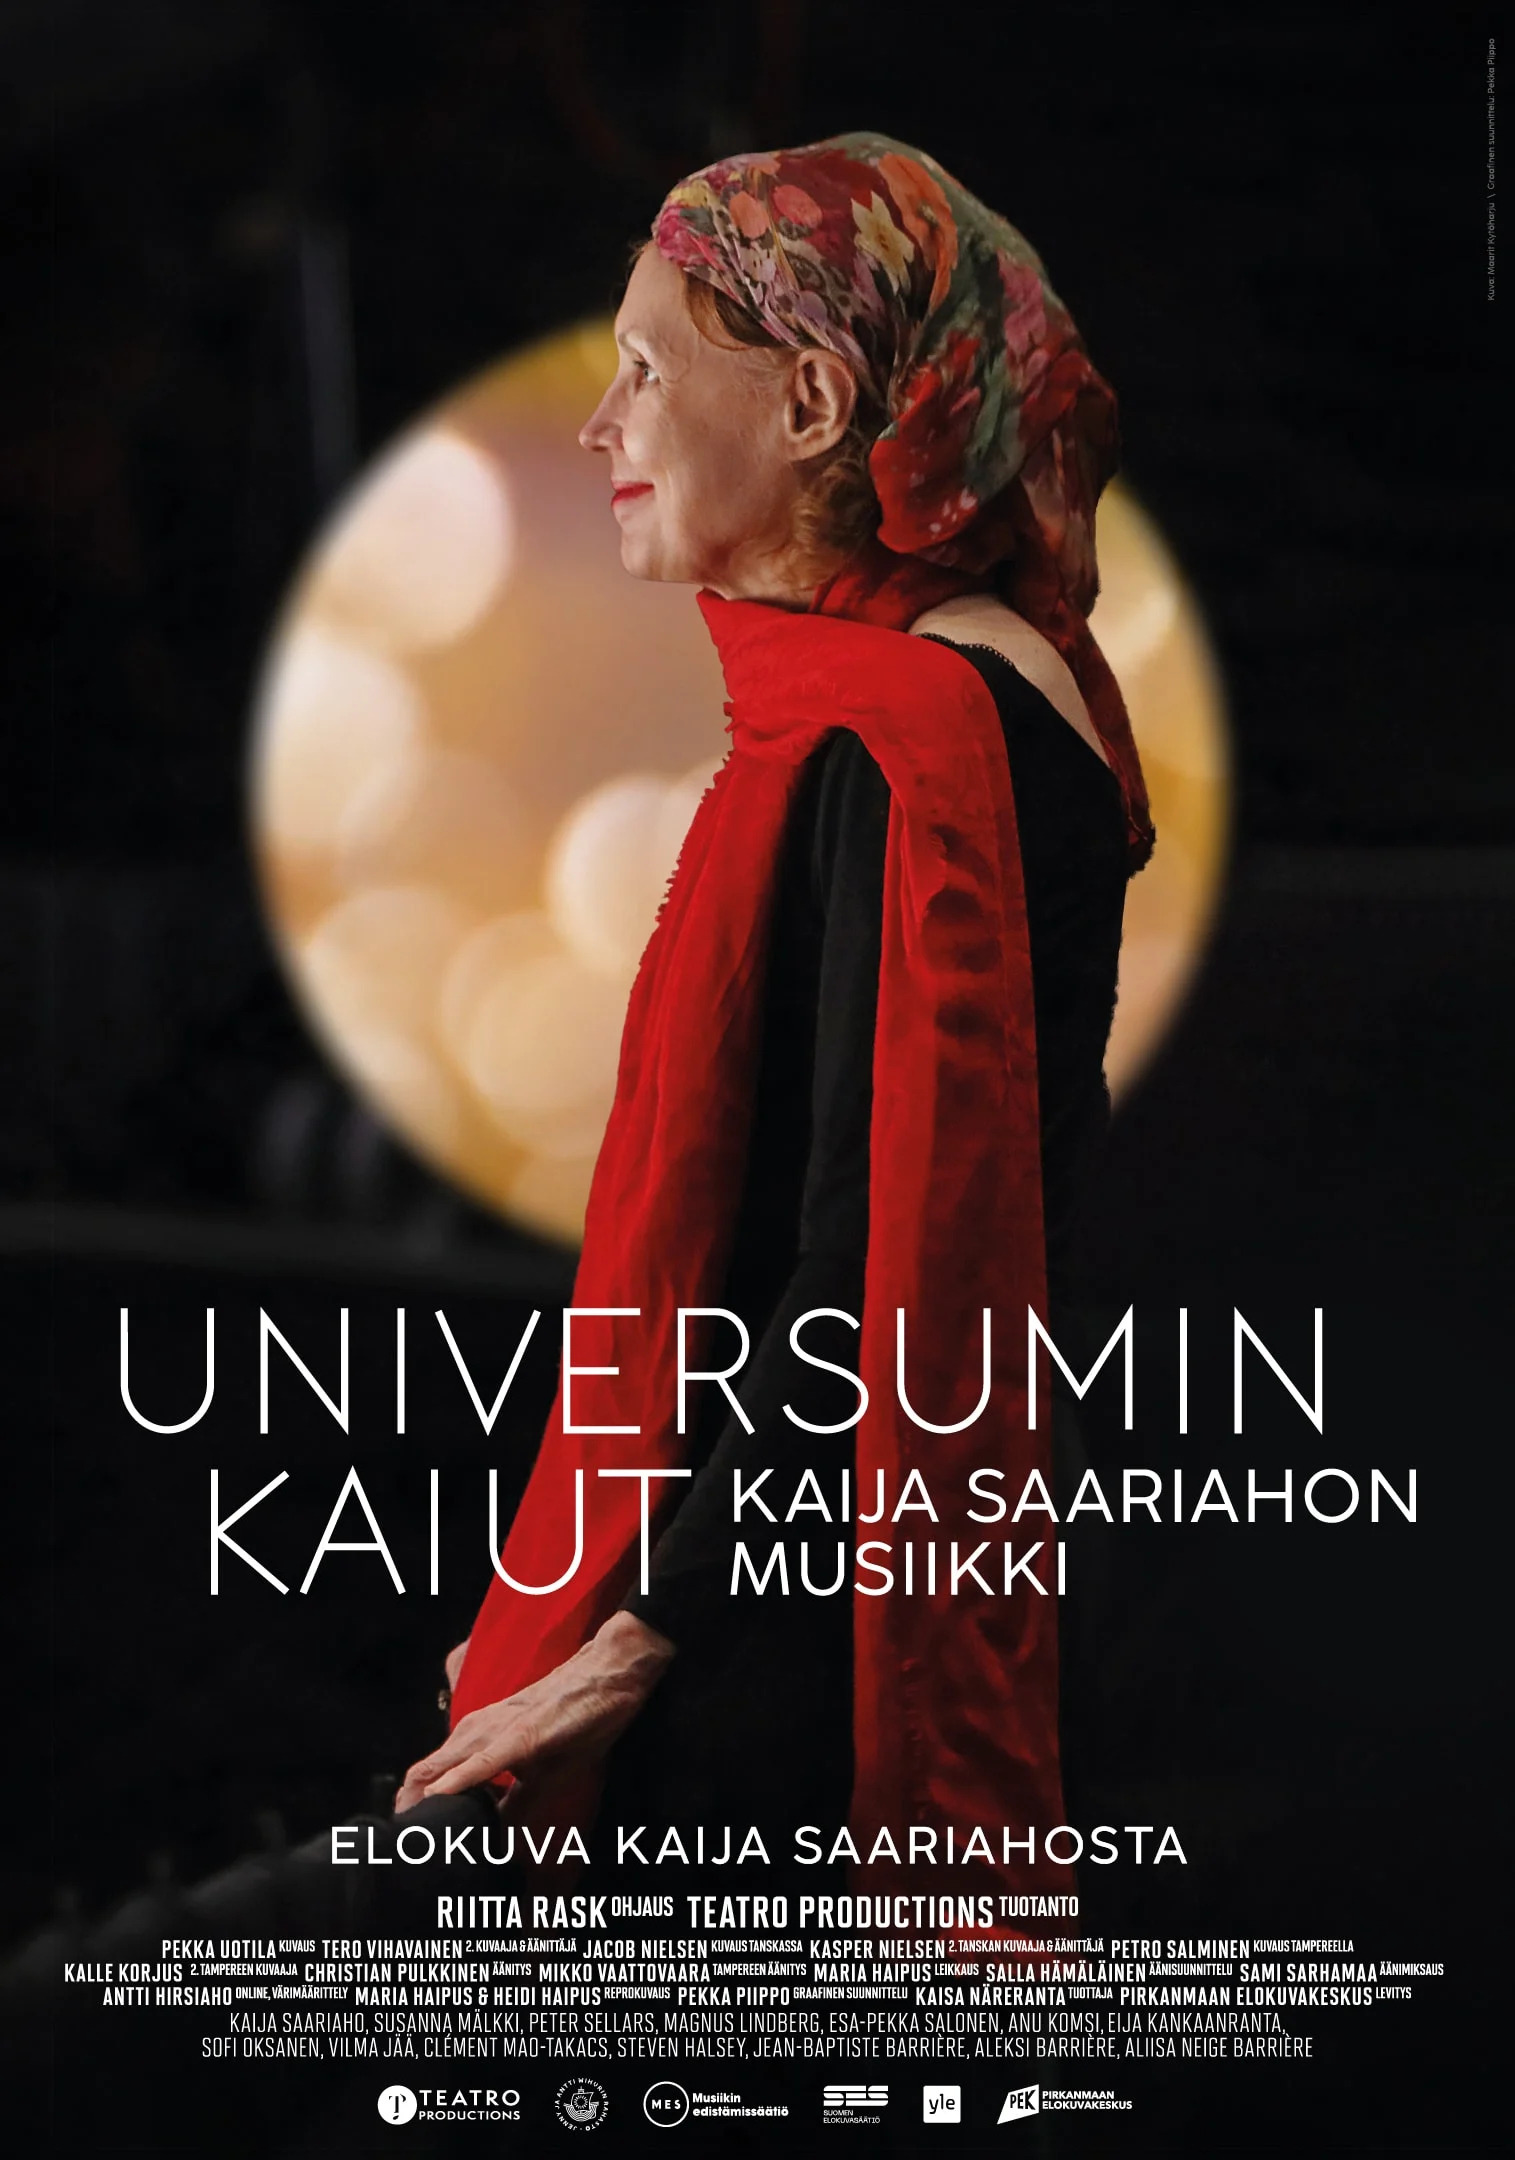 Mega Sized Movie Poster Image for Universumin kaiut - Kaija Saariahon musiikki 